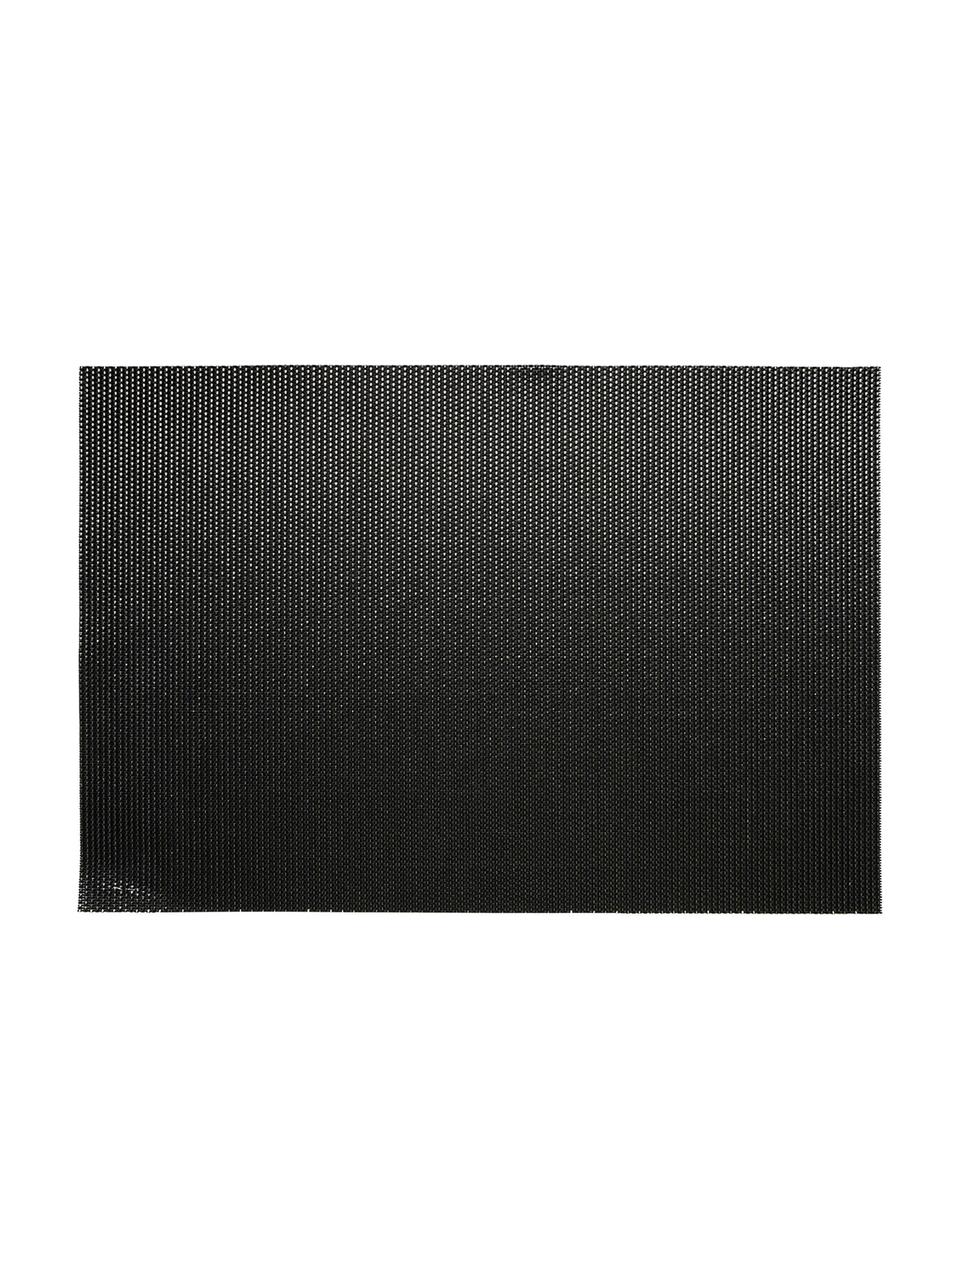 Kunststoffen placemats Brilliant, 2 stuks, Kunststof, Zwart, goudkleurig, 30 x 45 cm